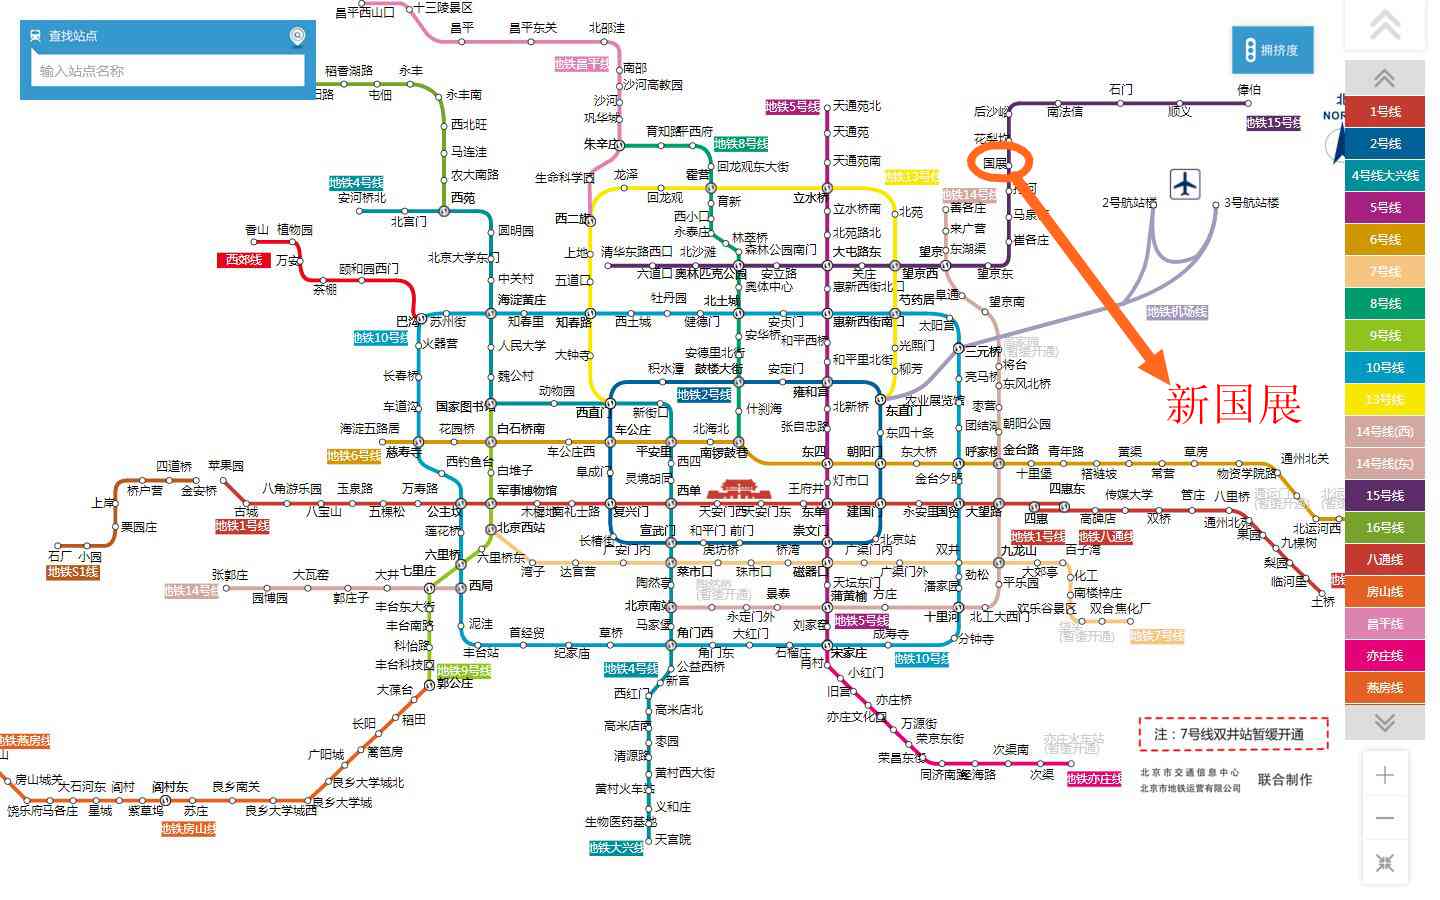 【北京市地铁交通线路图】